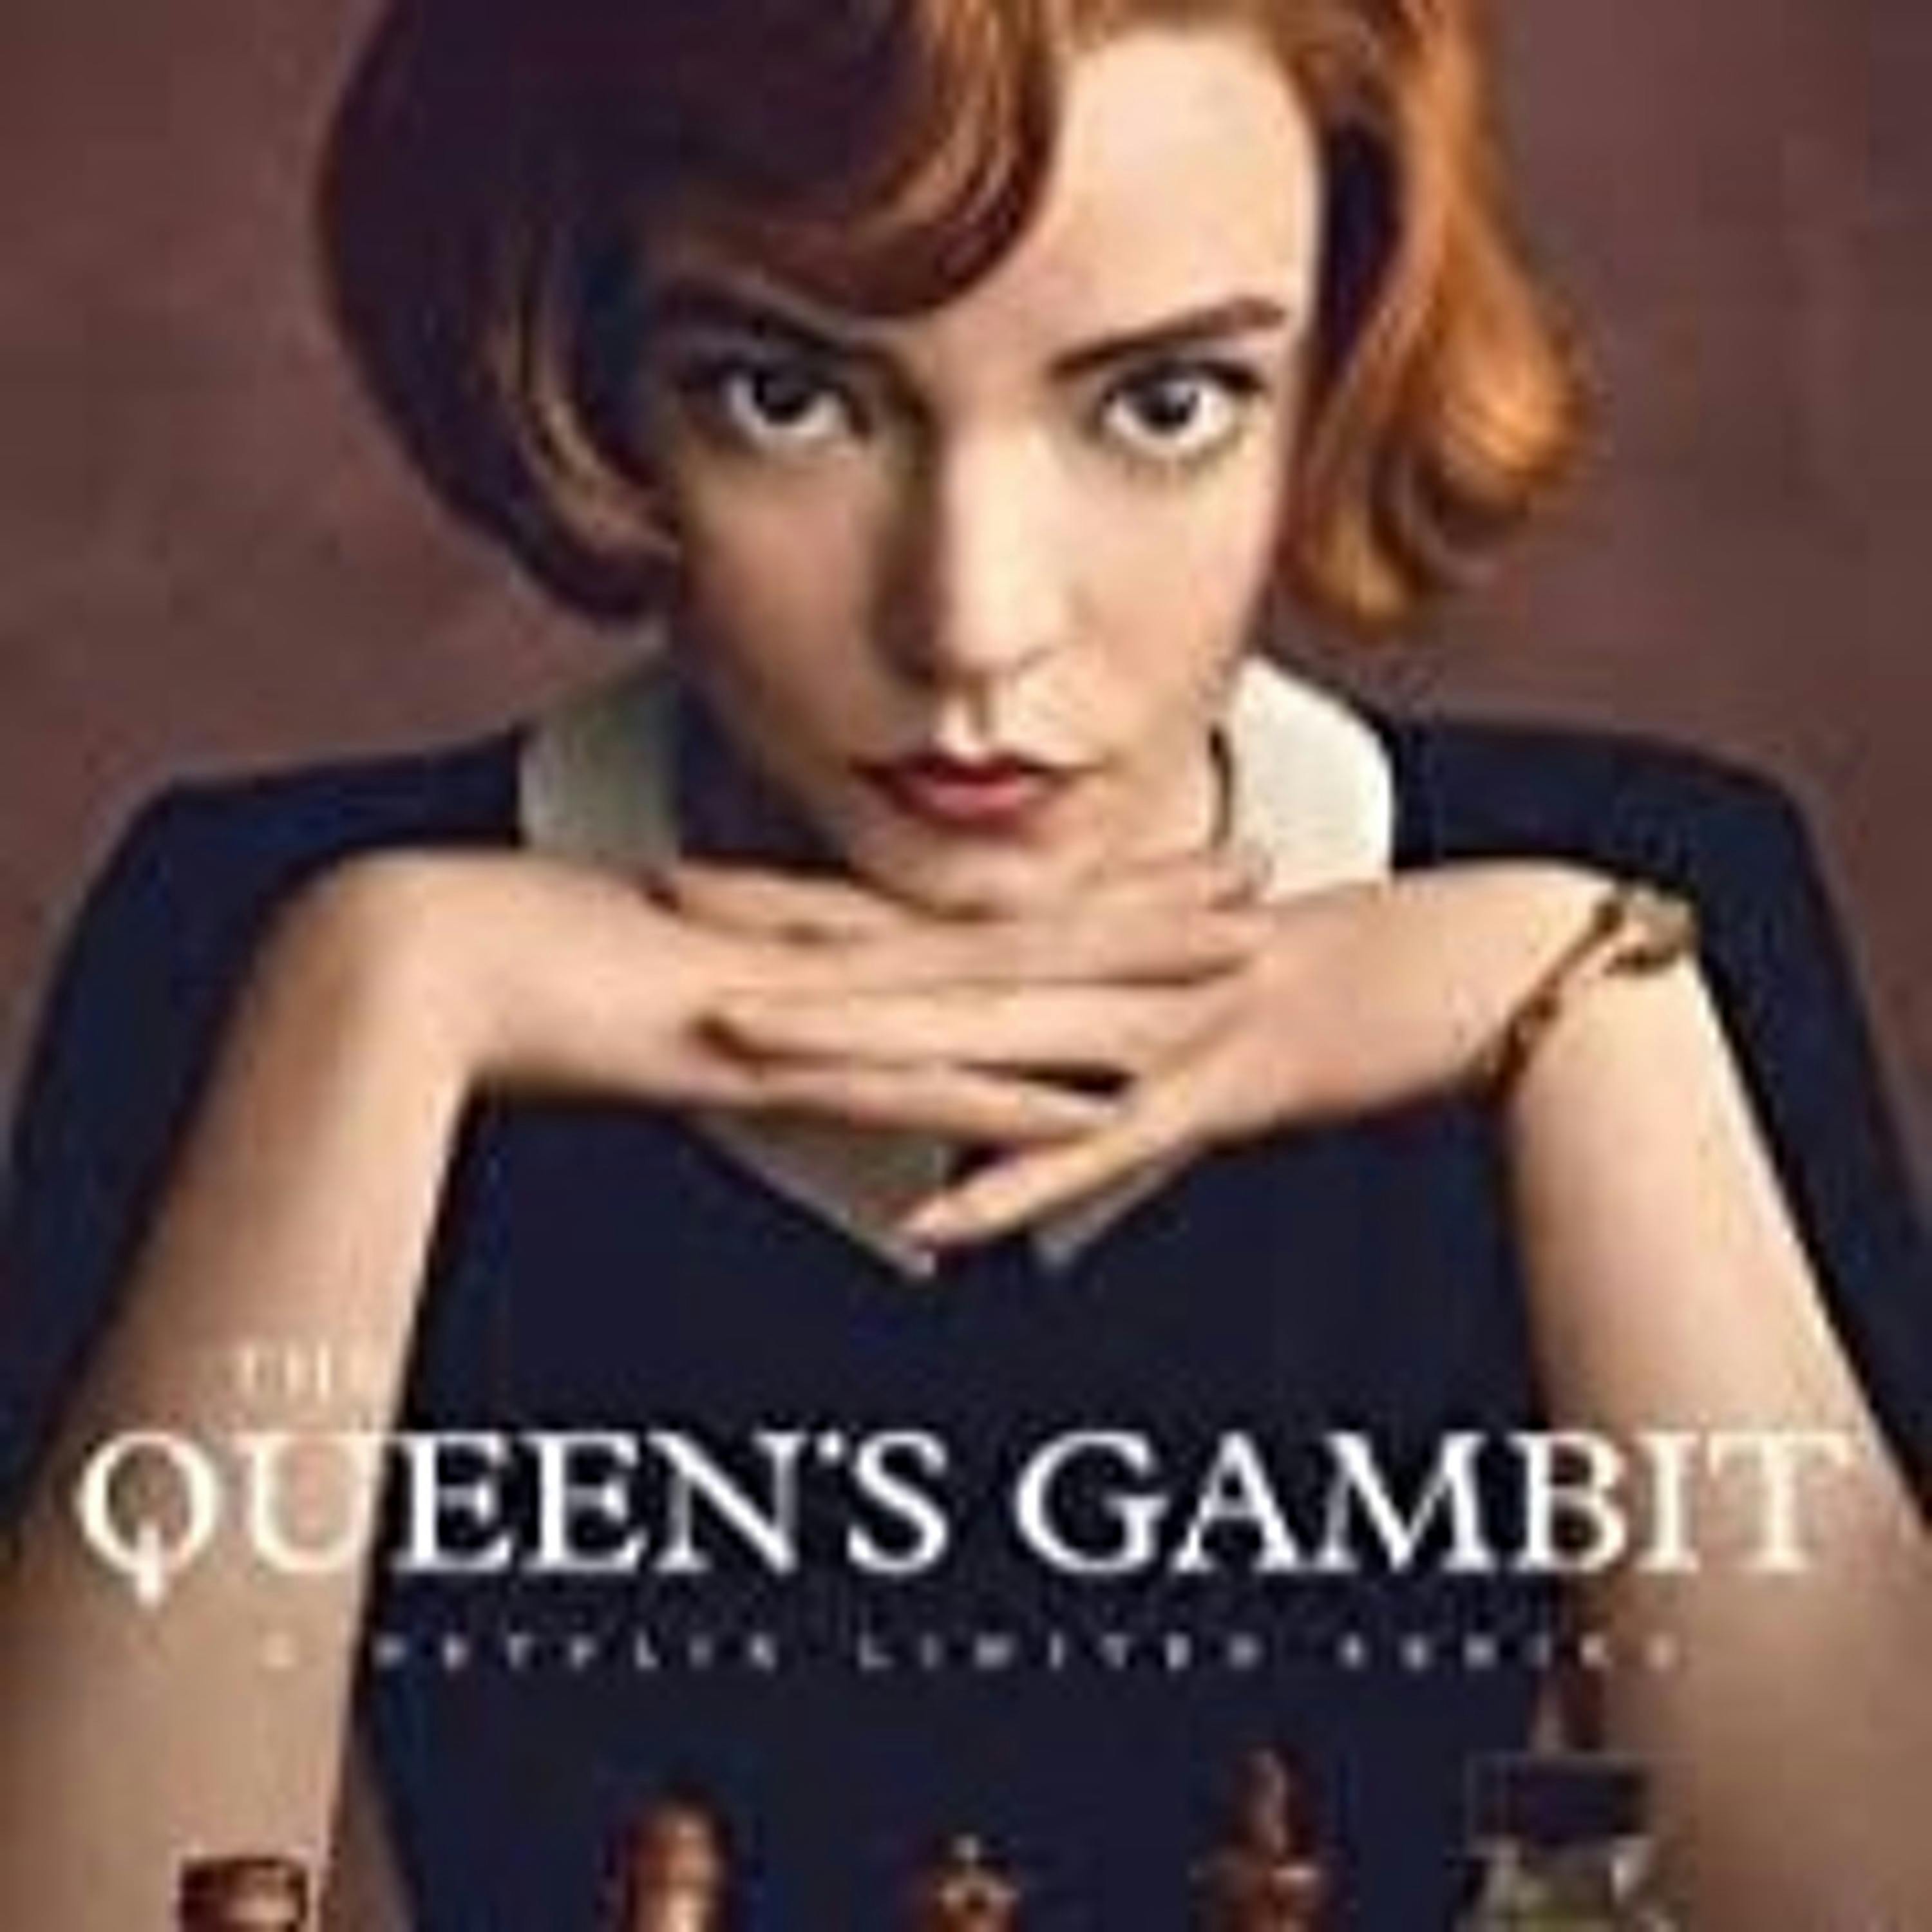 Review: The Queen’s Gambit